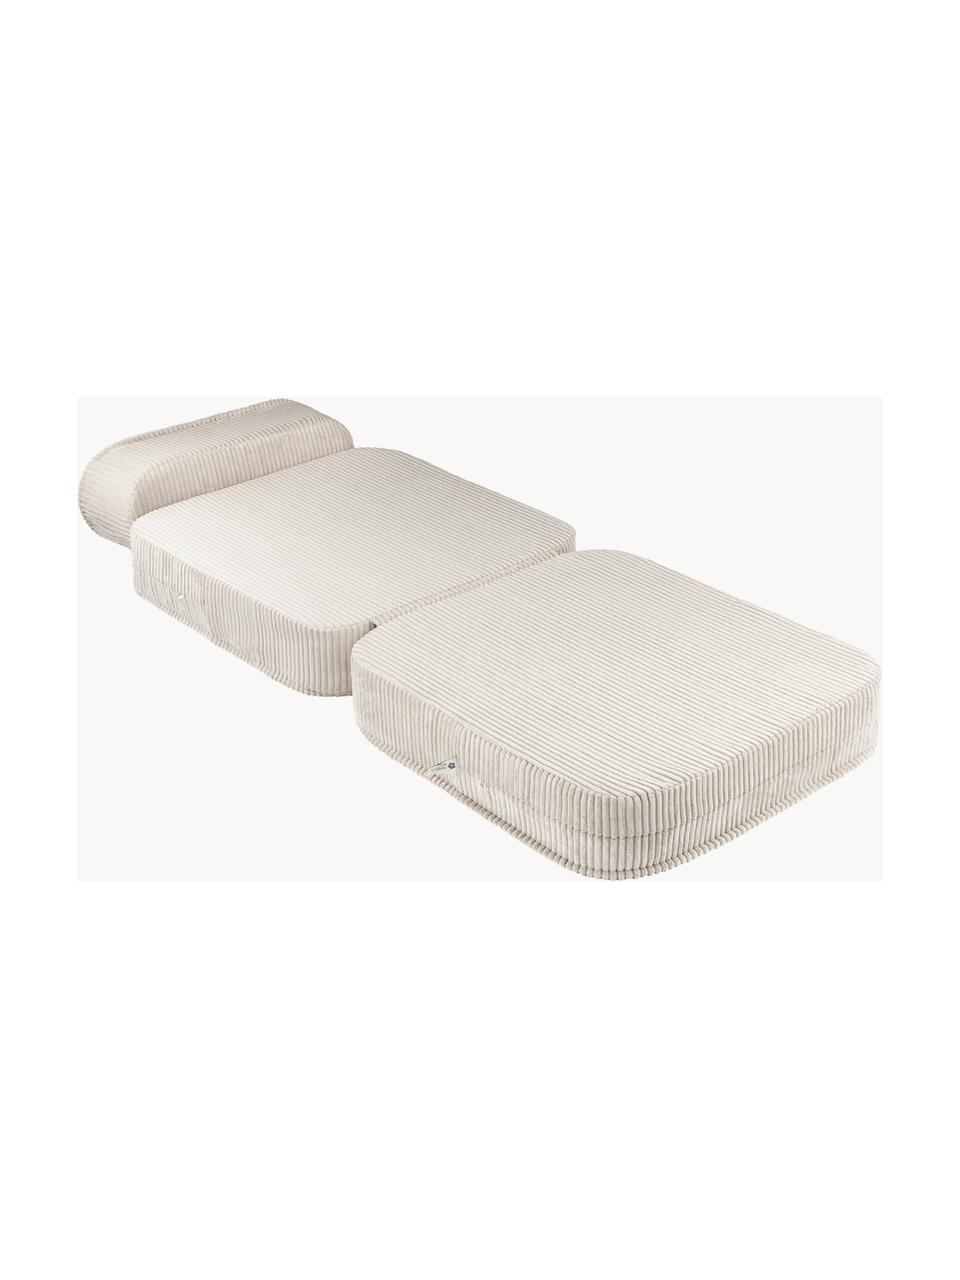 Fotel rozkładany ze sztruksu dla dzieci Sugar, Tapicerka: sztruks (100% poliester) , Biały sztruks, S 70 x W 40 cm